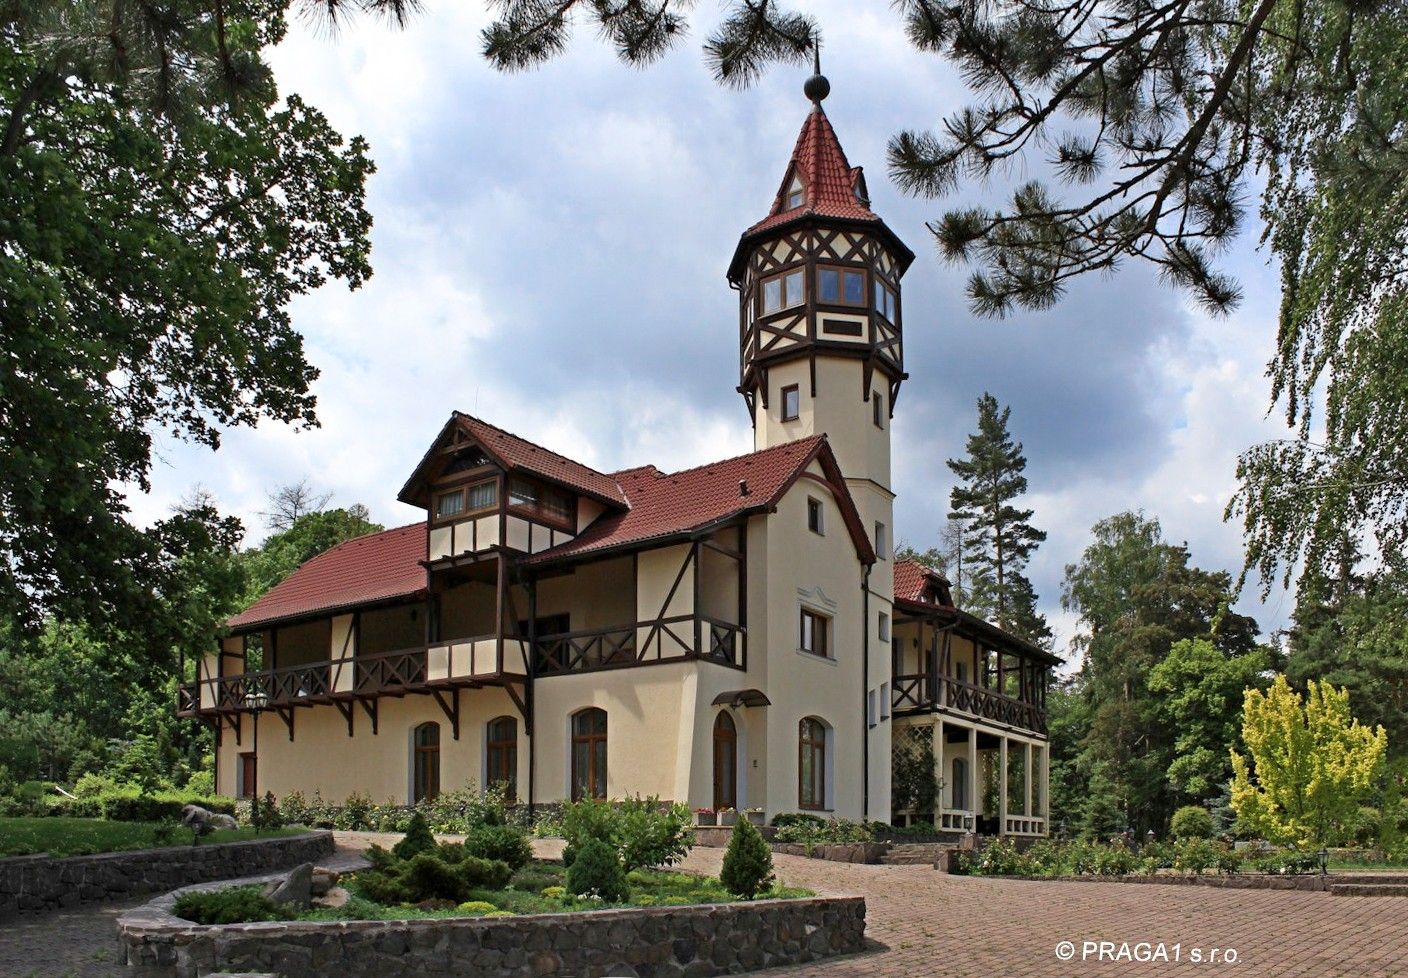 Photos Villa éclectique près de Karlovy Vary, 6 hectares de terrain